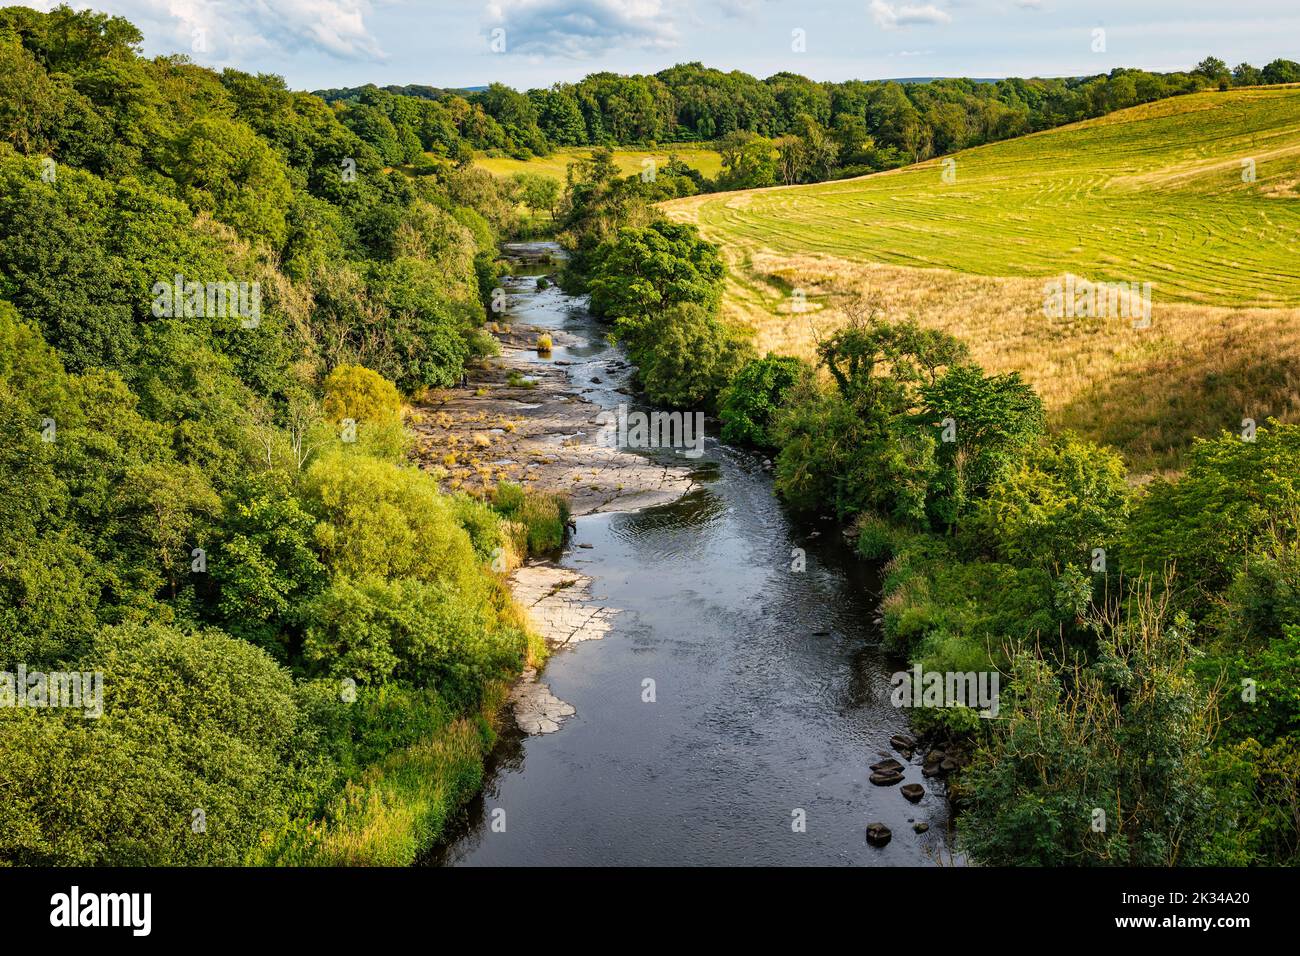 Vista desde el acueducto del canal sobre el valle del río Almond, West Lothian, Escocia, Reino Unido Foto de stock